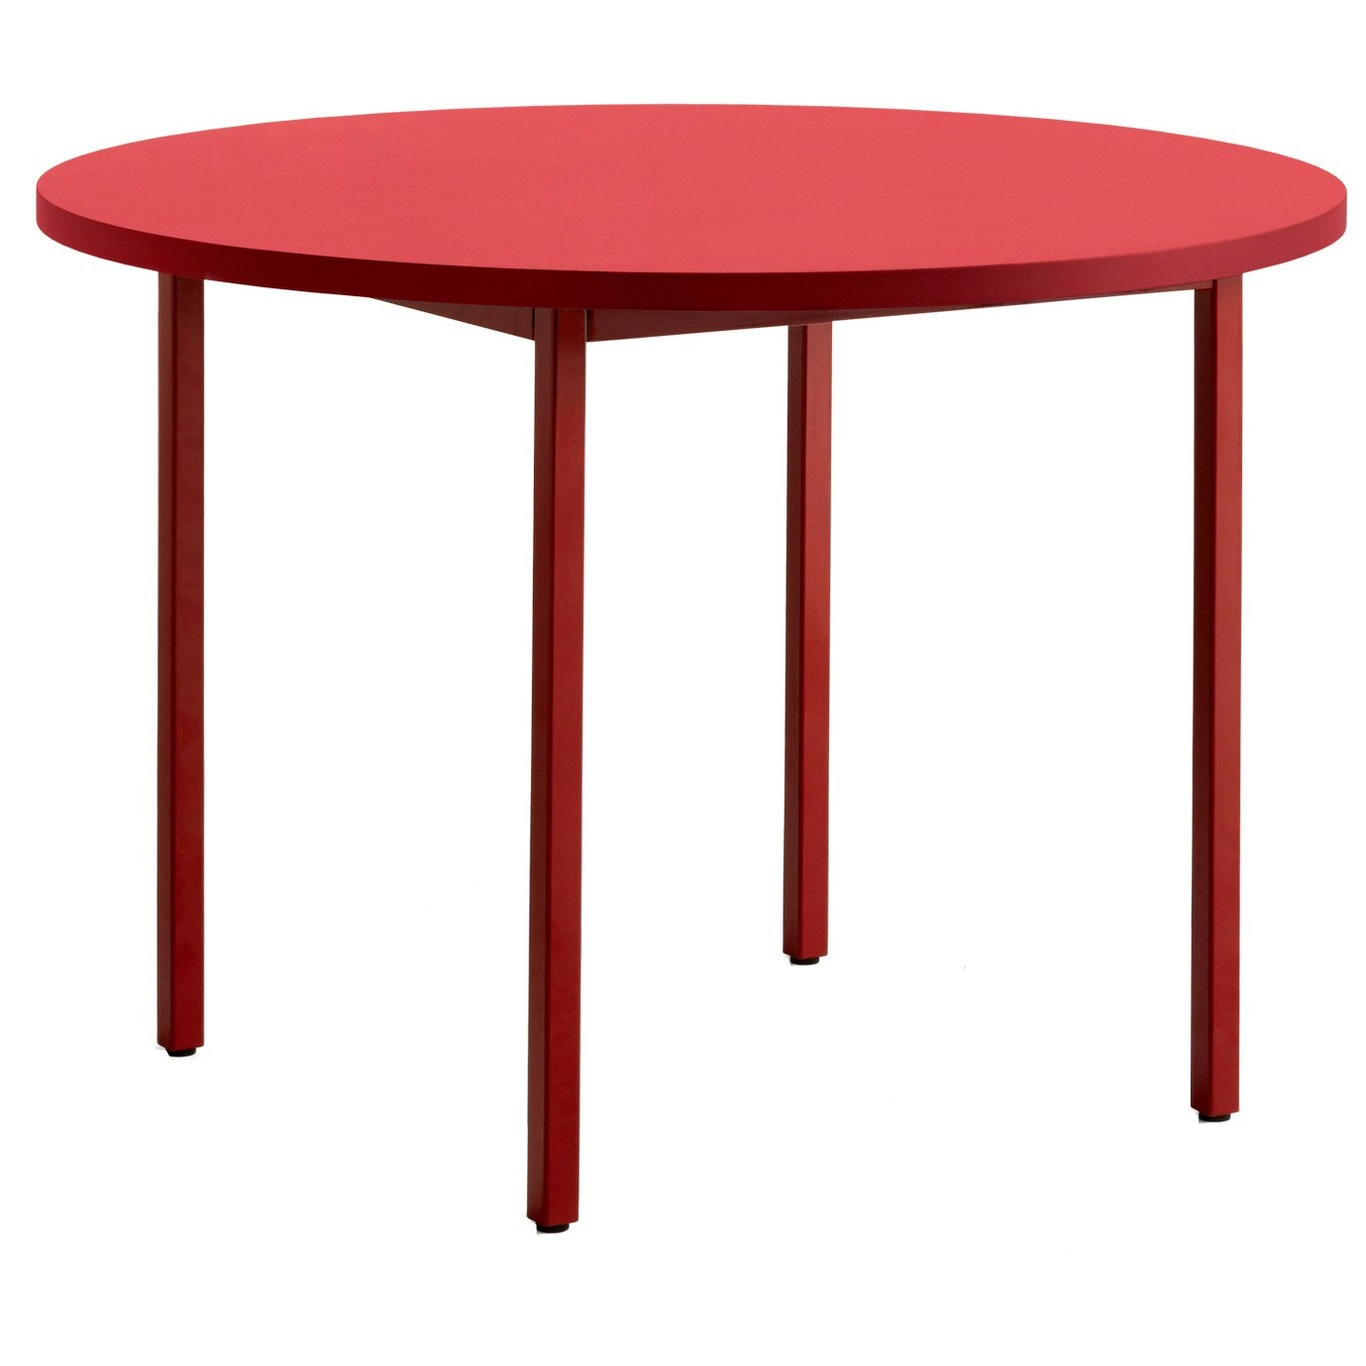 Two-Colour Pöytä Ø105 cm, Viininpunainen / Punainen